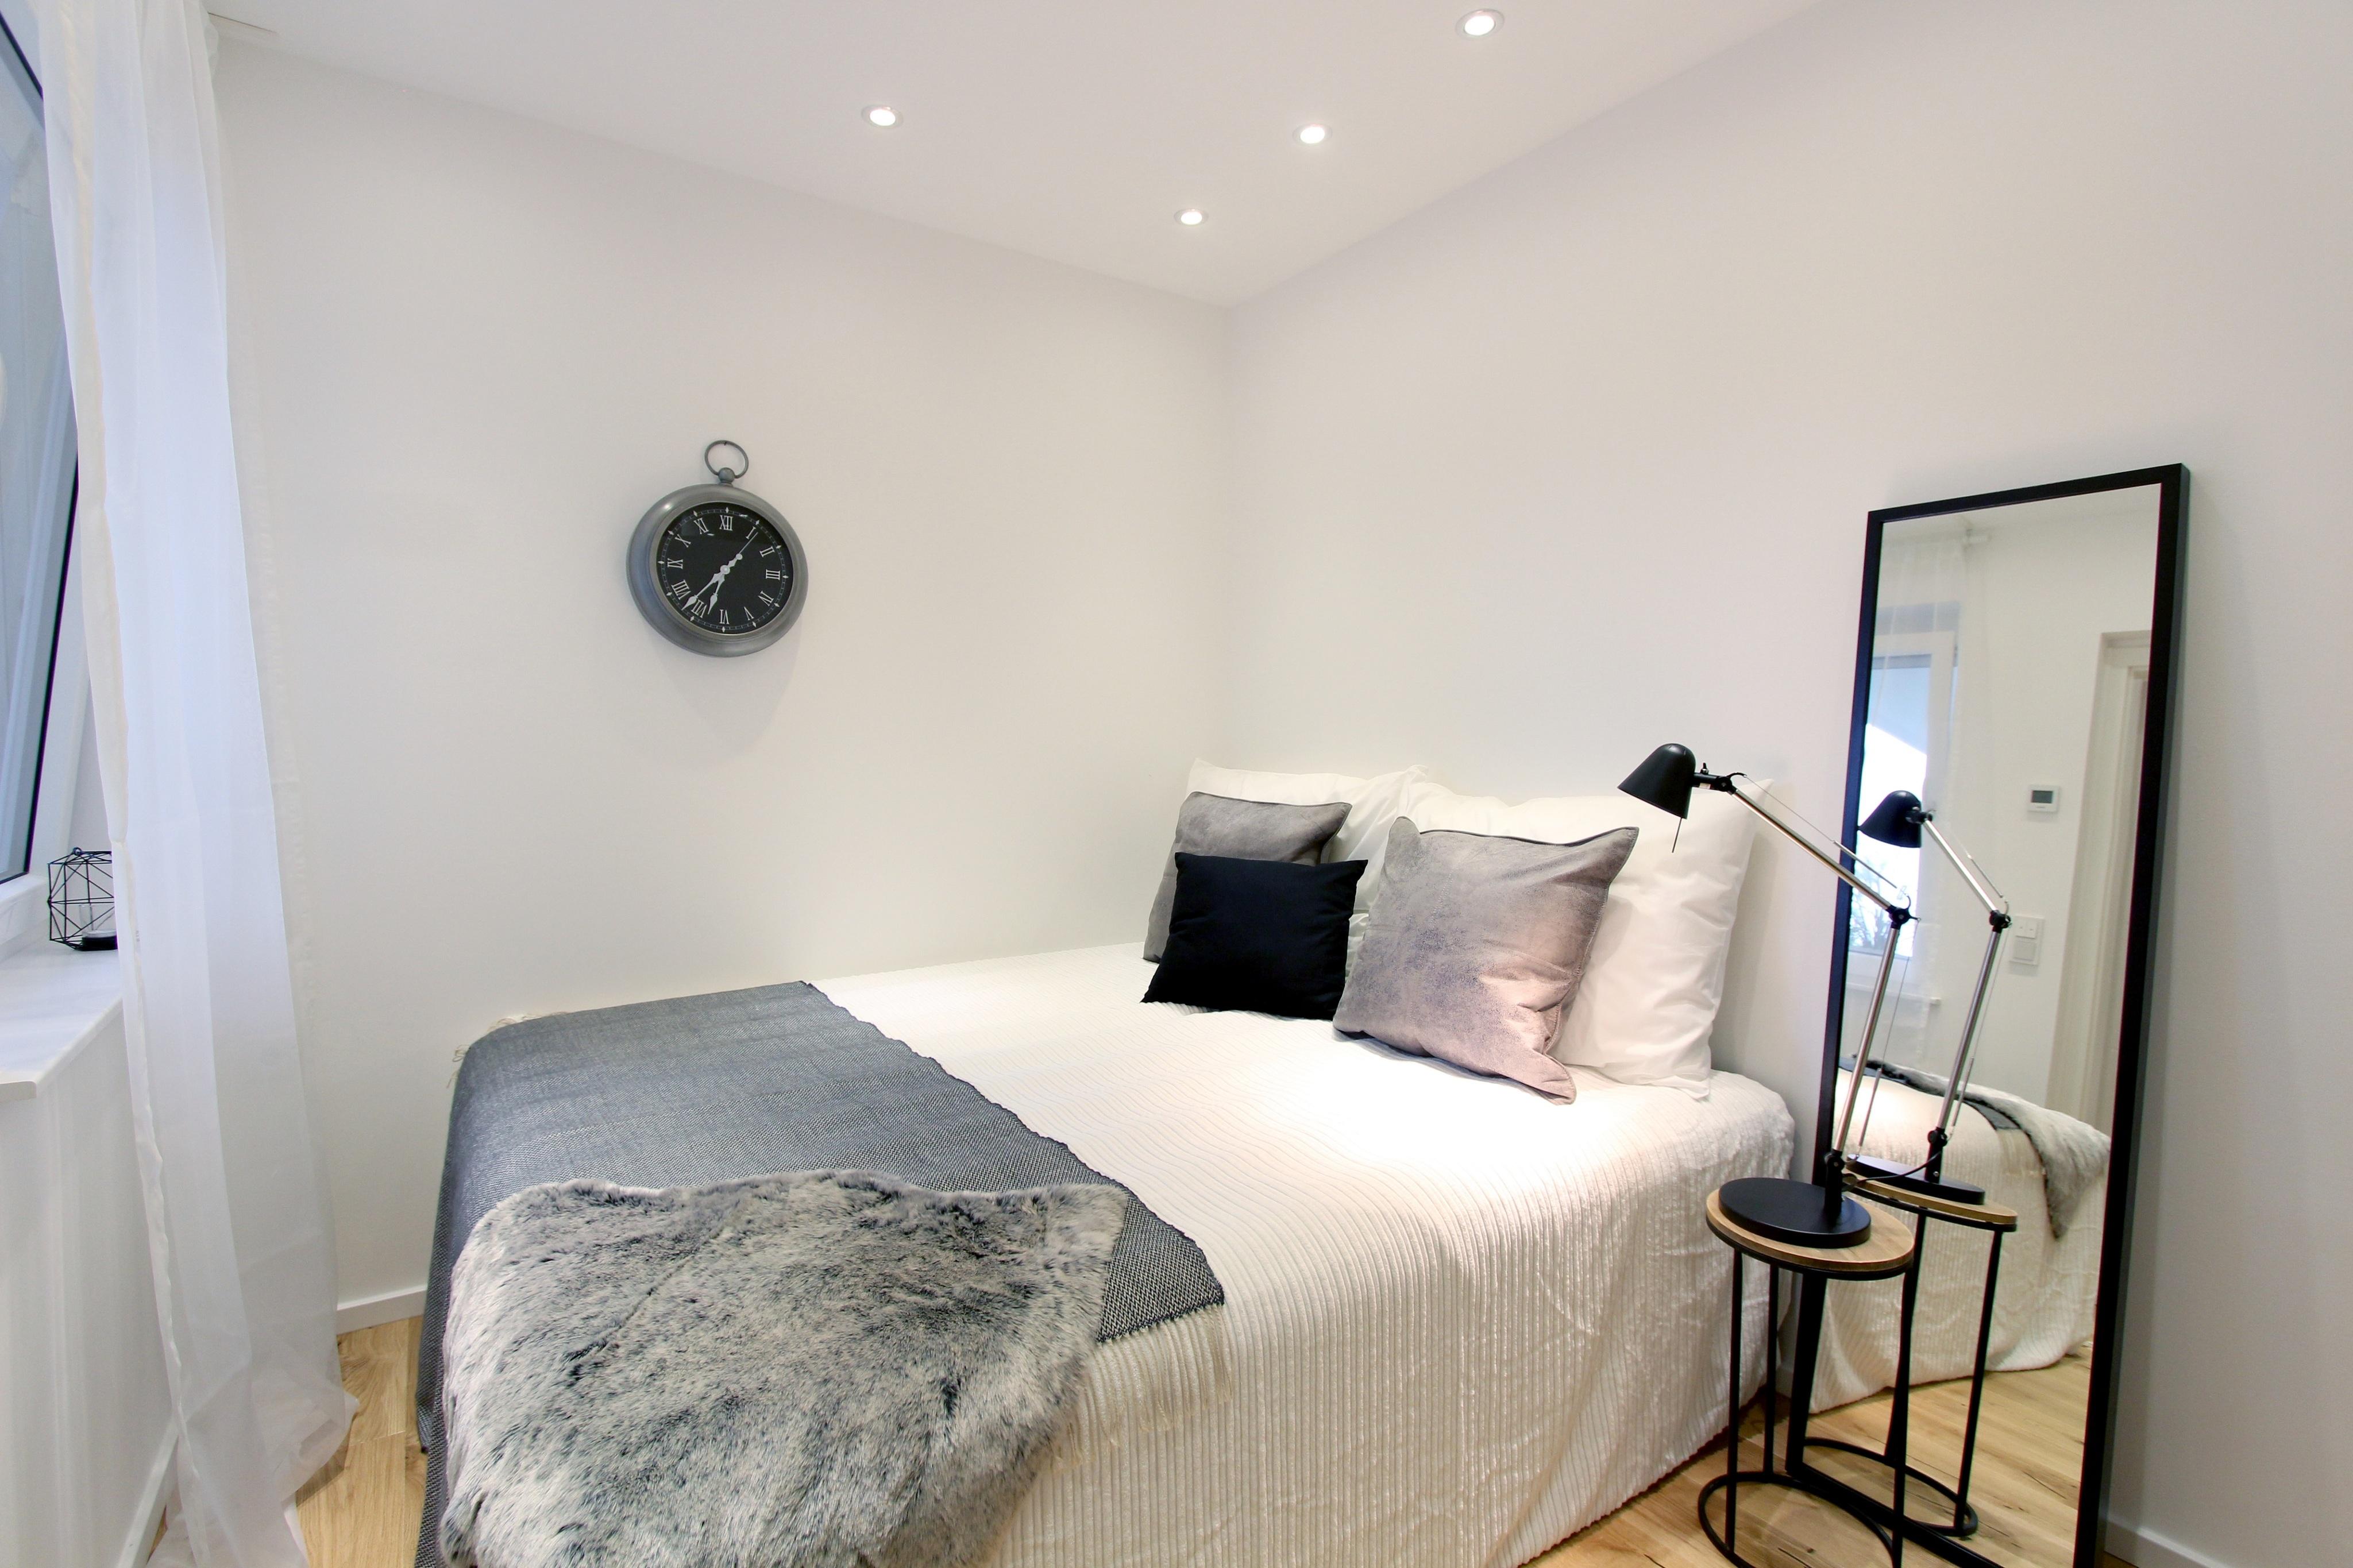 Home Staging Schlafzimmer #bett #nachttisch #ebenerdigedusche #einrichtungsberatung #raumgestaltung ©Isabella Hemmer